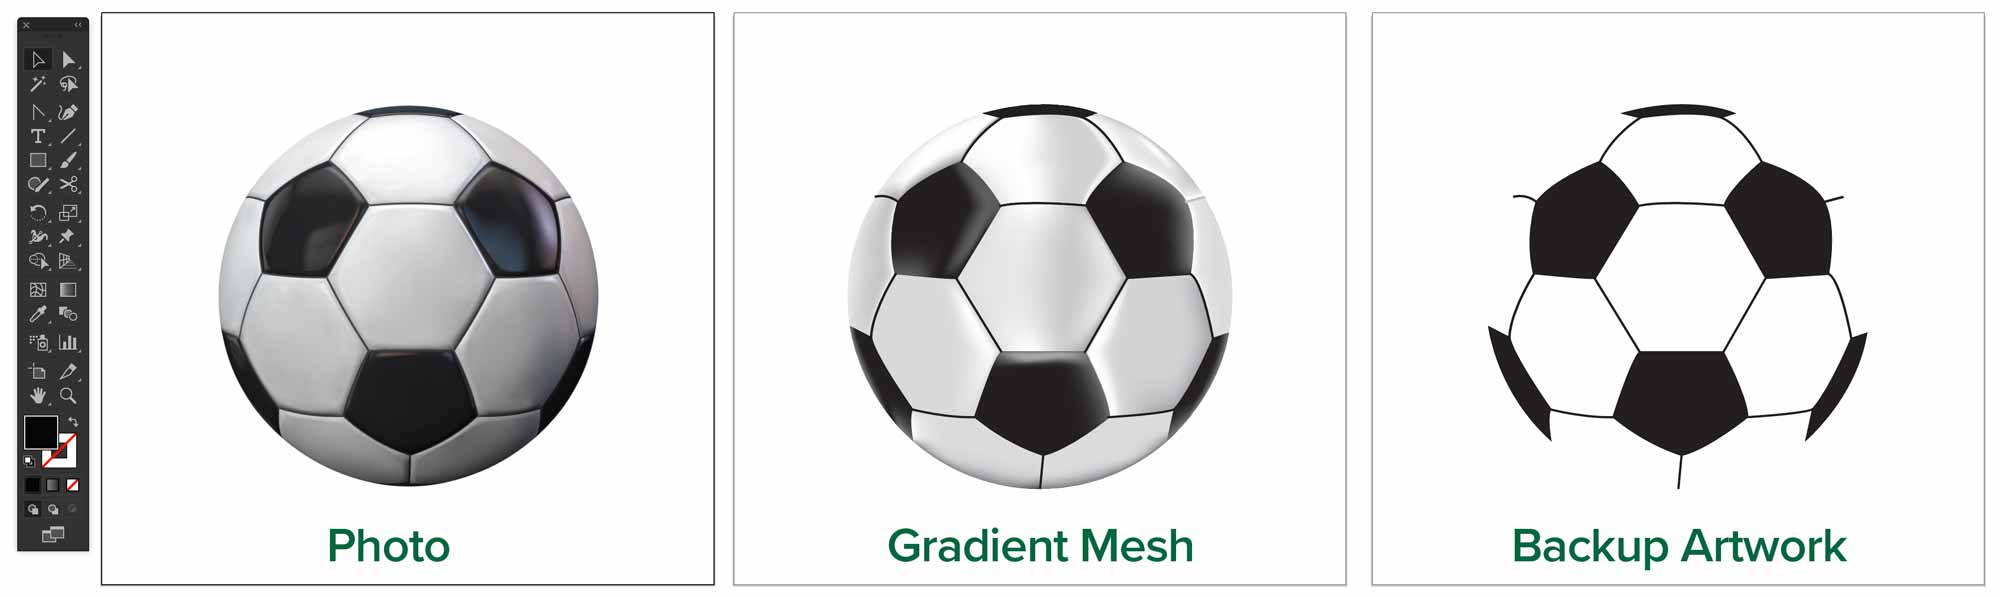 gradient-mesh-soccer-ball